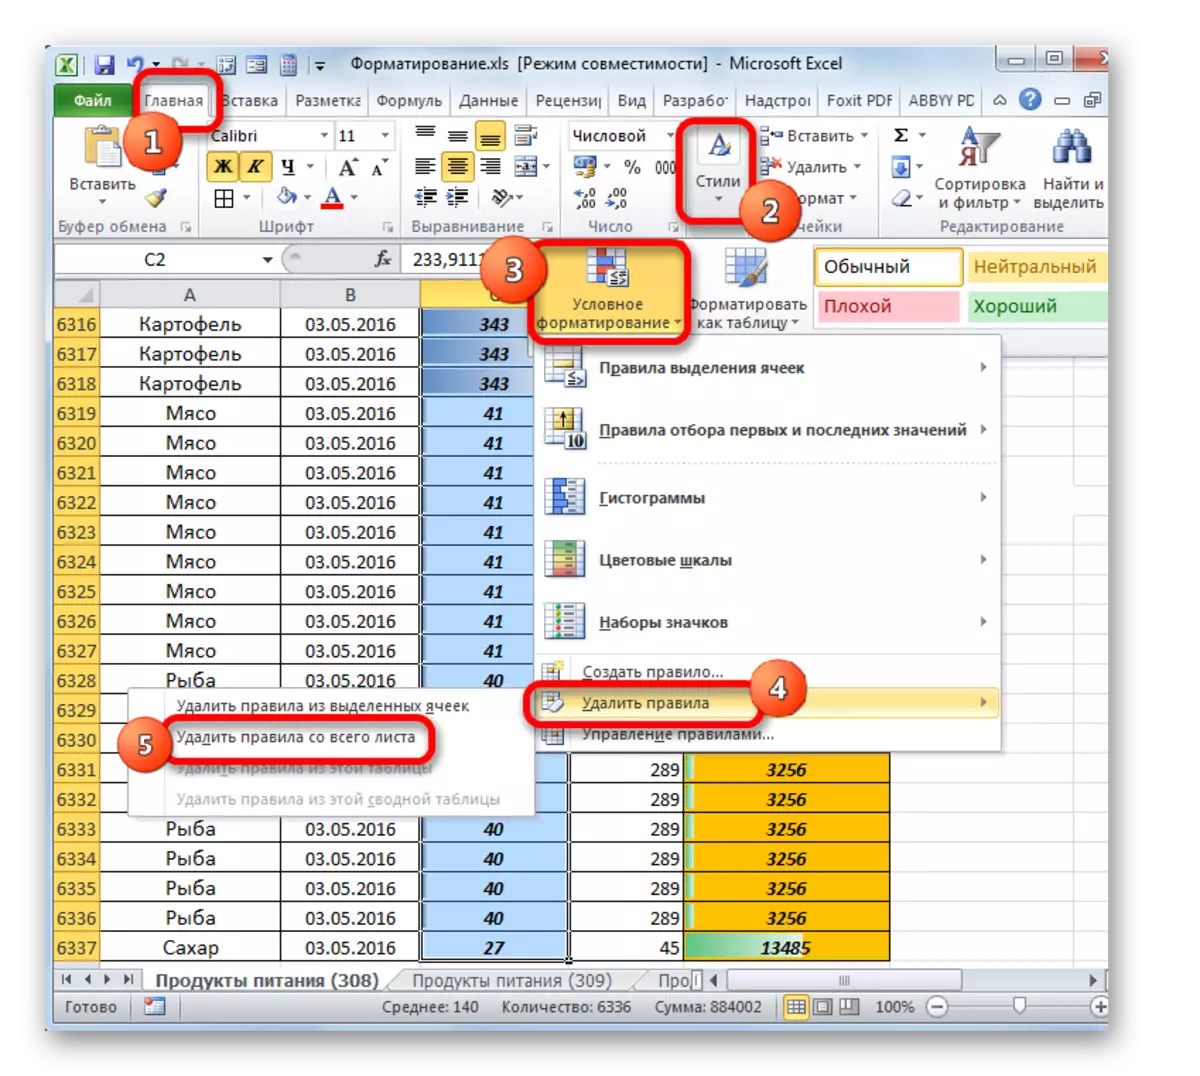 הסרת כללי עיצוב מותנה מכל הגיליון ב- Microsoft Excel